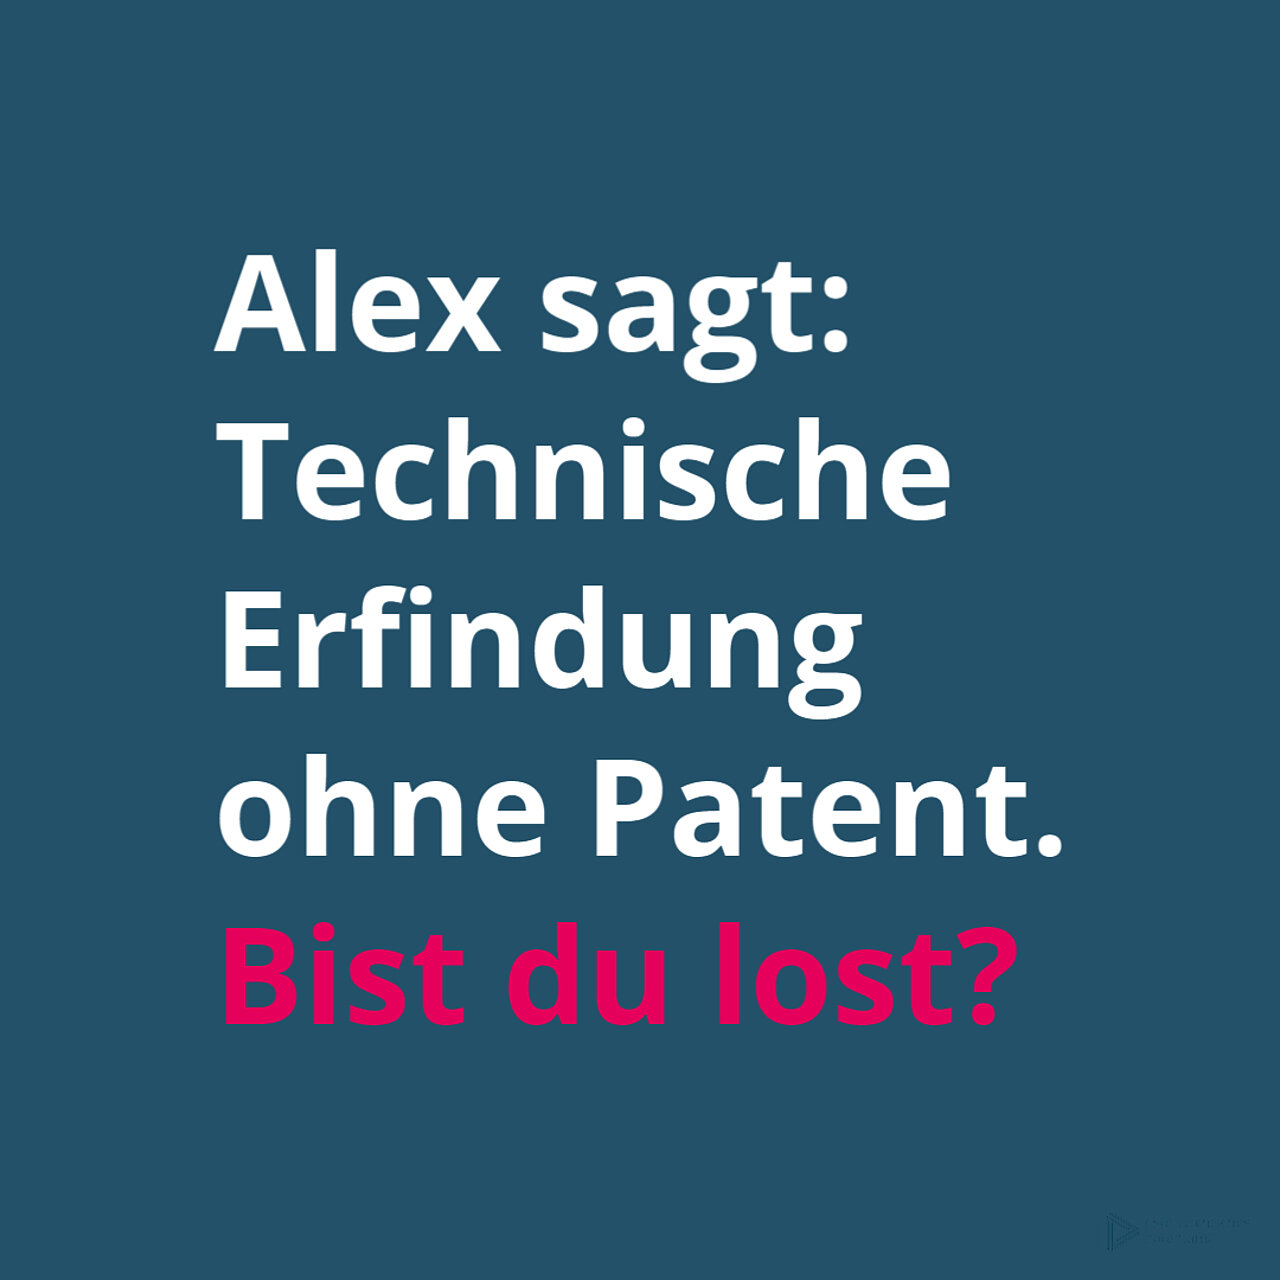 Text: Alex sagt, technische Erfindung ohne Patent. Bist du lost?